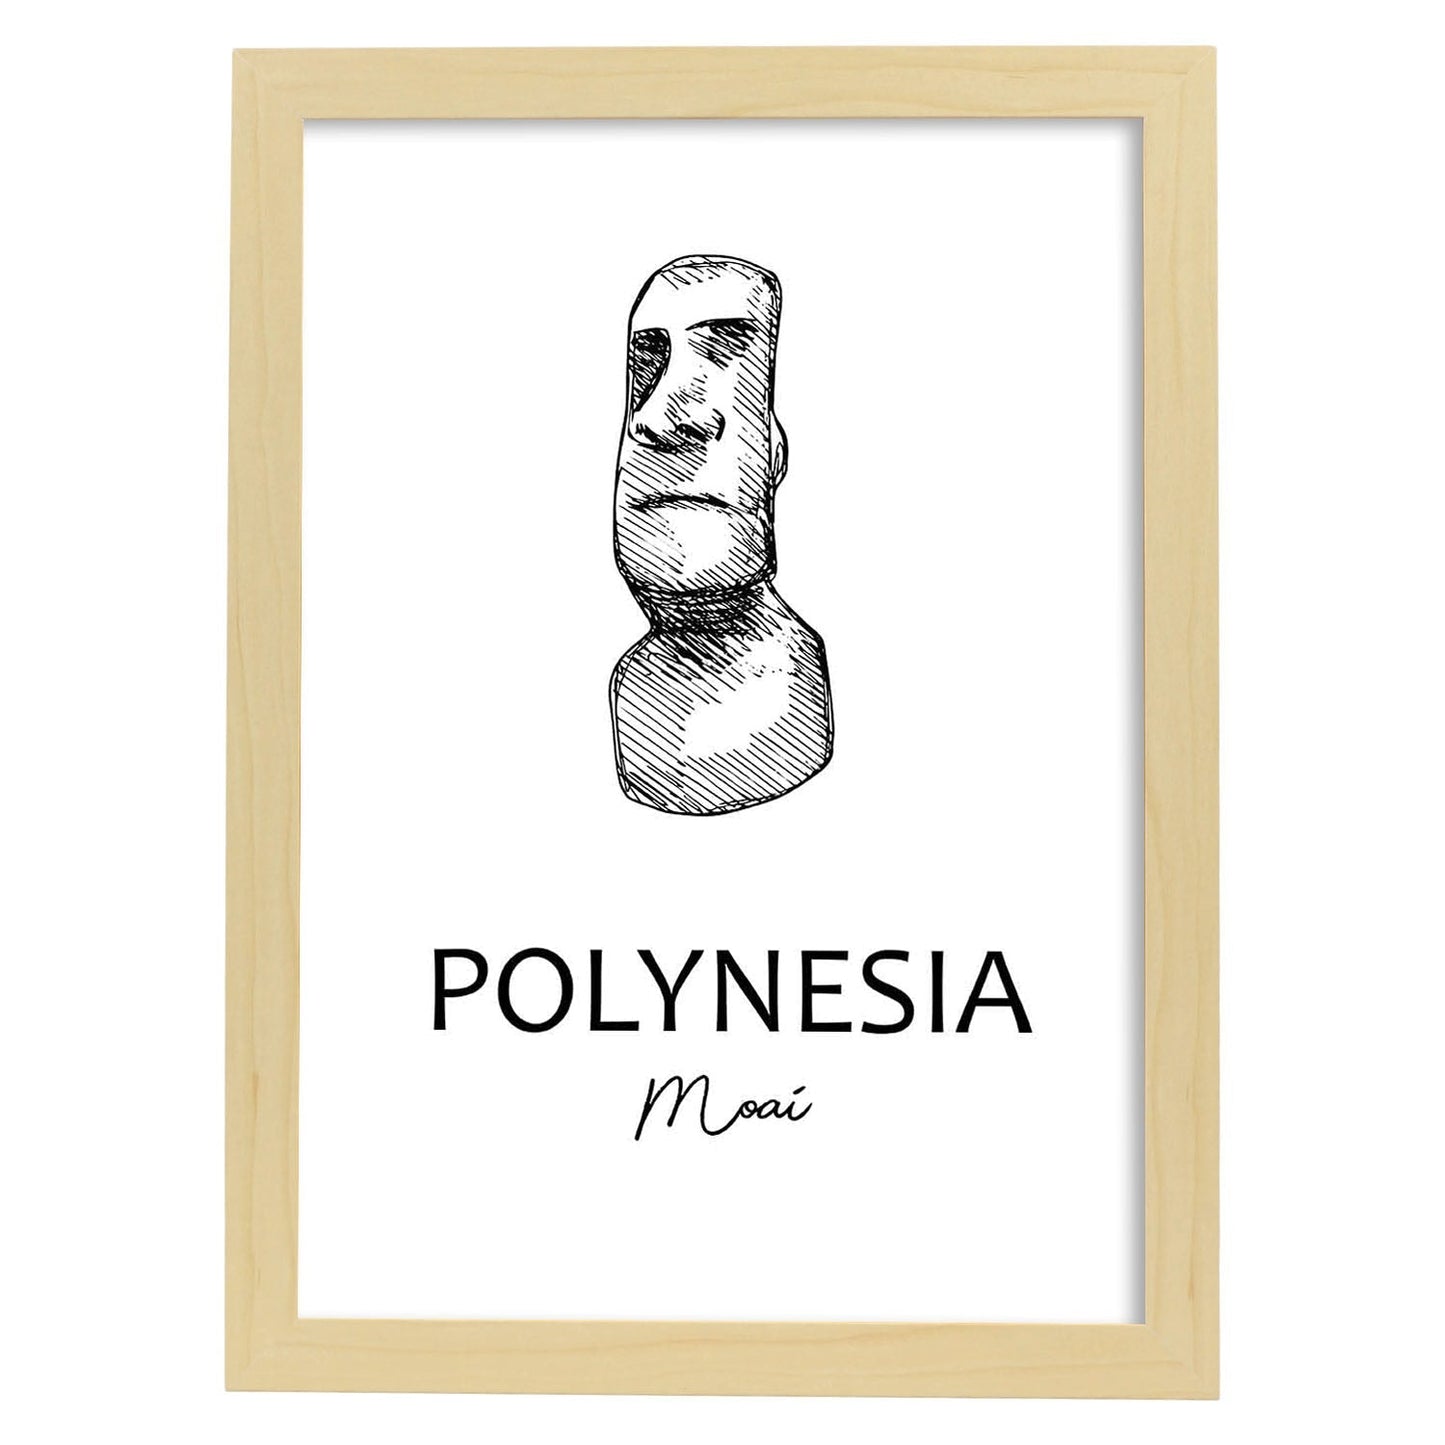 Poster de Polinesia - Moai. Láminas con monumentos de ciudades.-Artwork-Nacnic-A3-Marco Madera clara-Nacnic Estudio SL